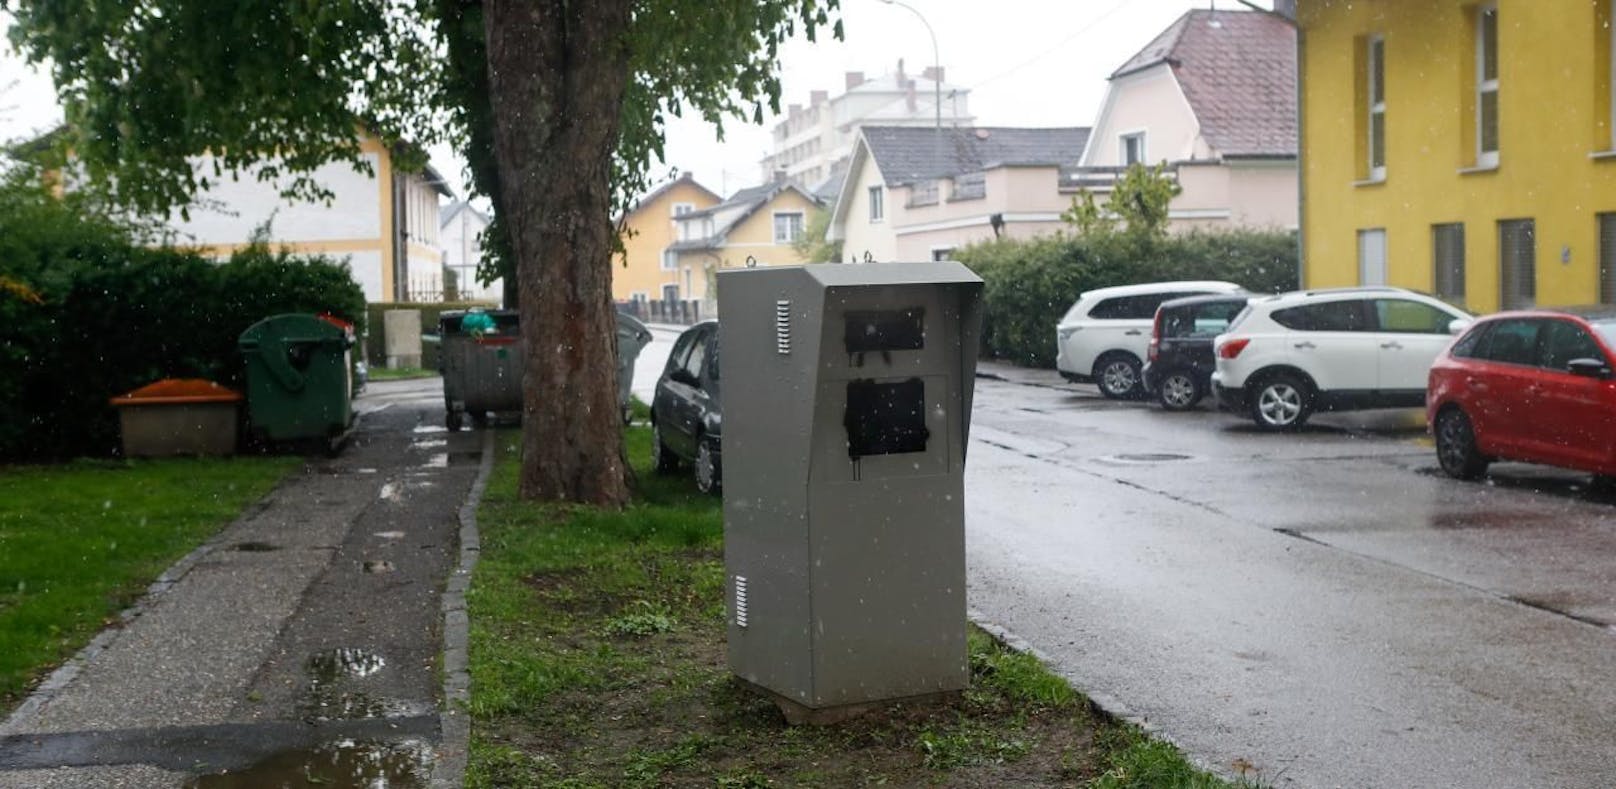 In Braunau wurden Mitte April bereits mehrere Radarkästen mit Farbe beschmiert.